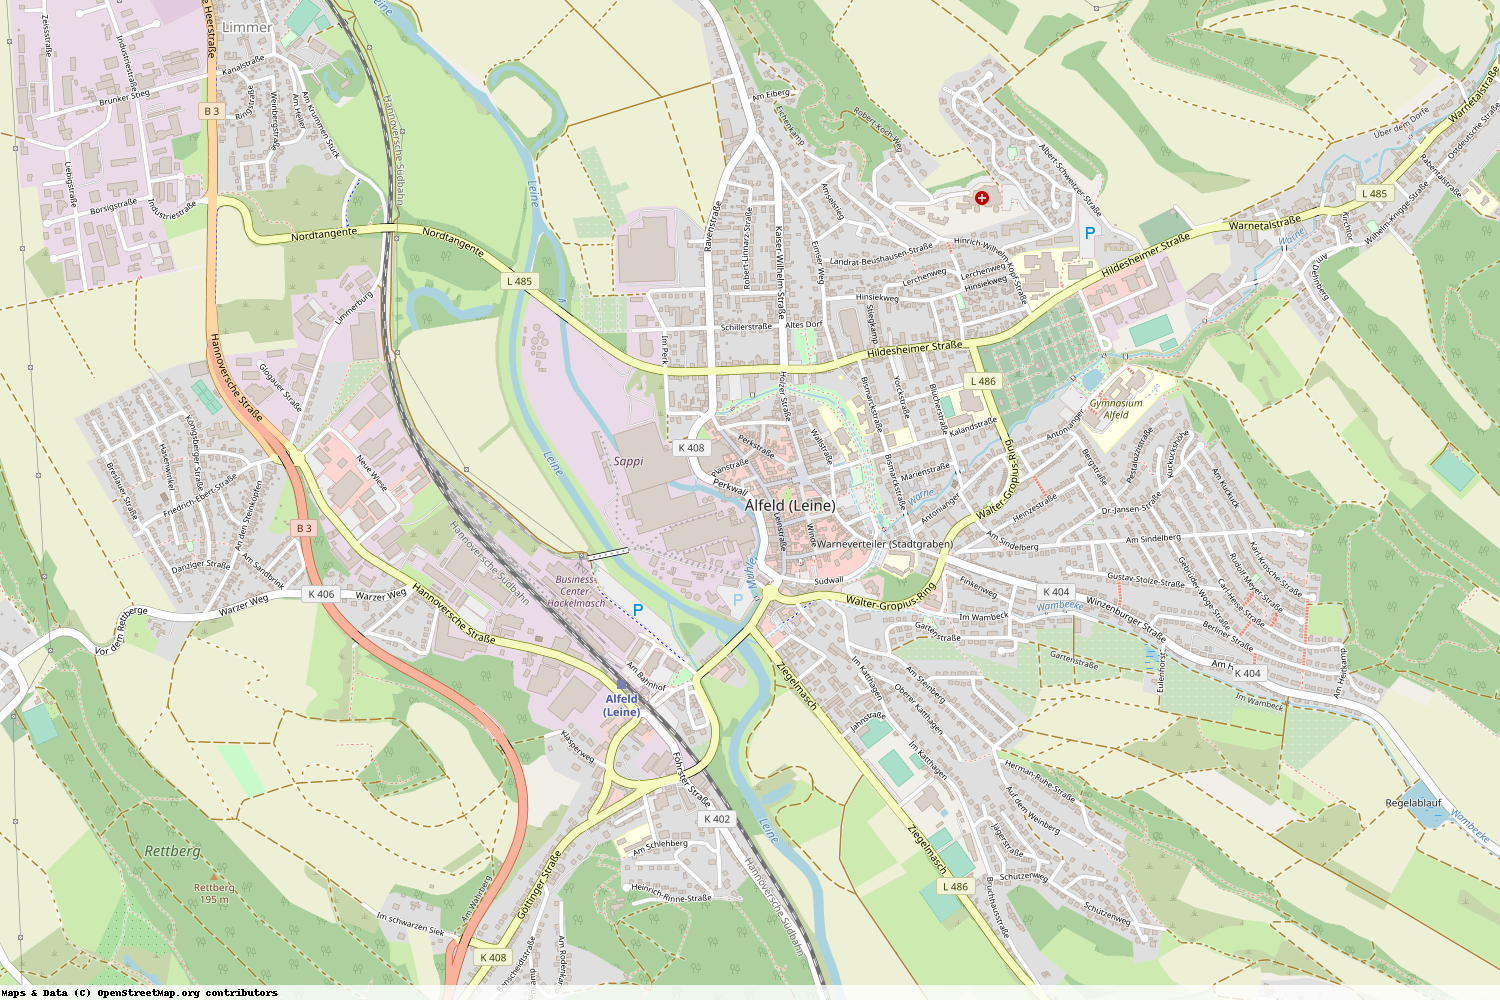 Ist gerade Stromausfall in Niedersachsen - Hildesheim - Alfeld (Leine)?